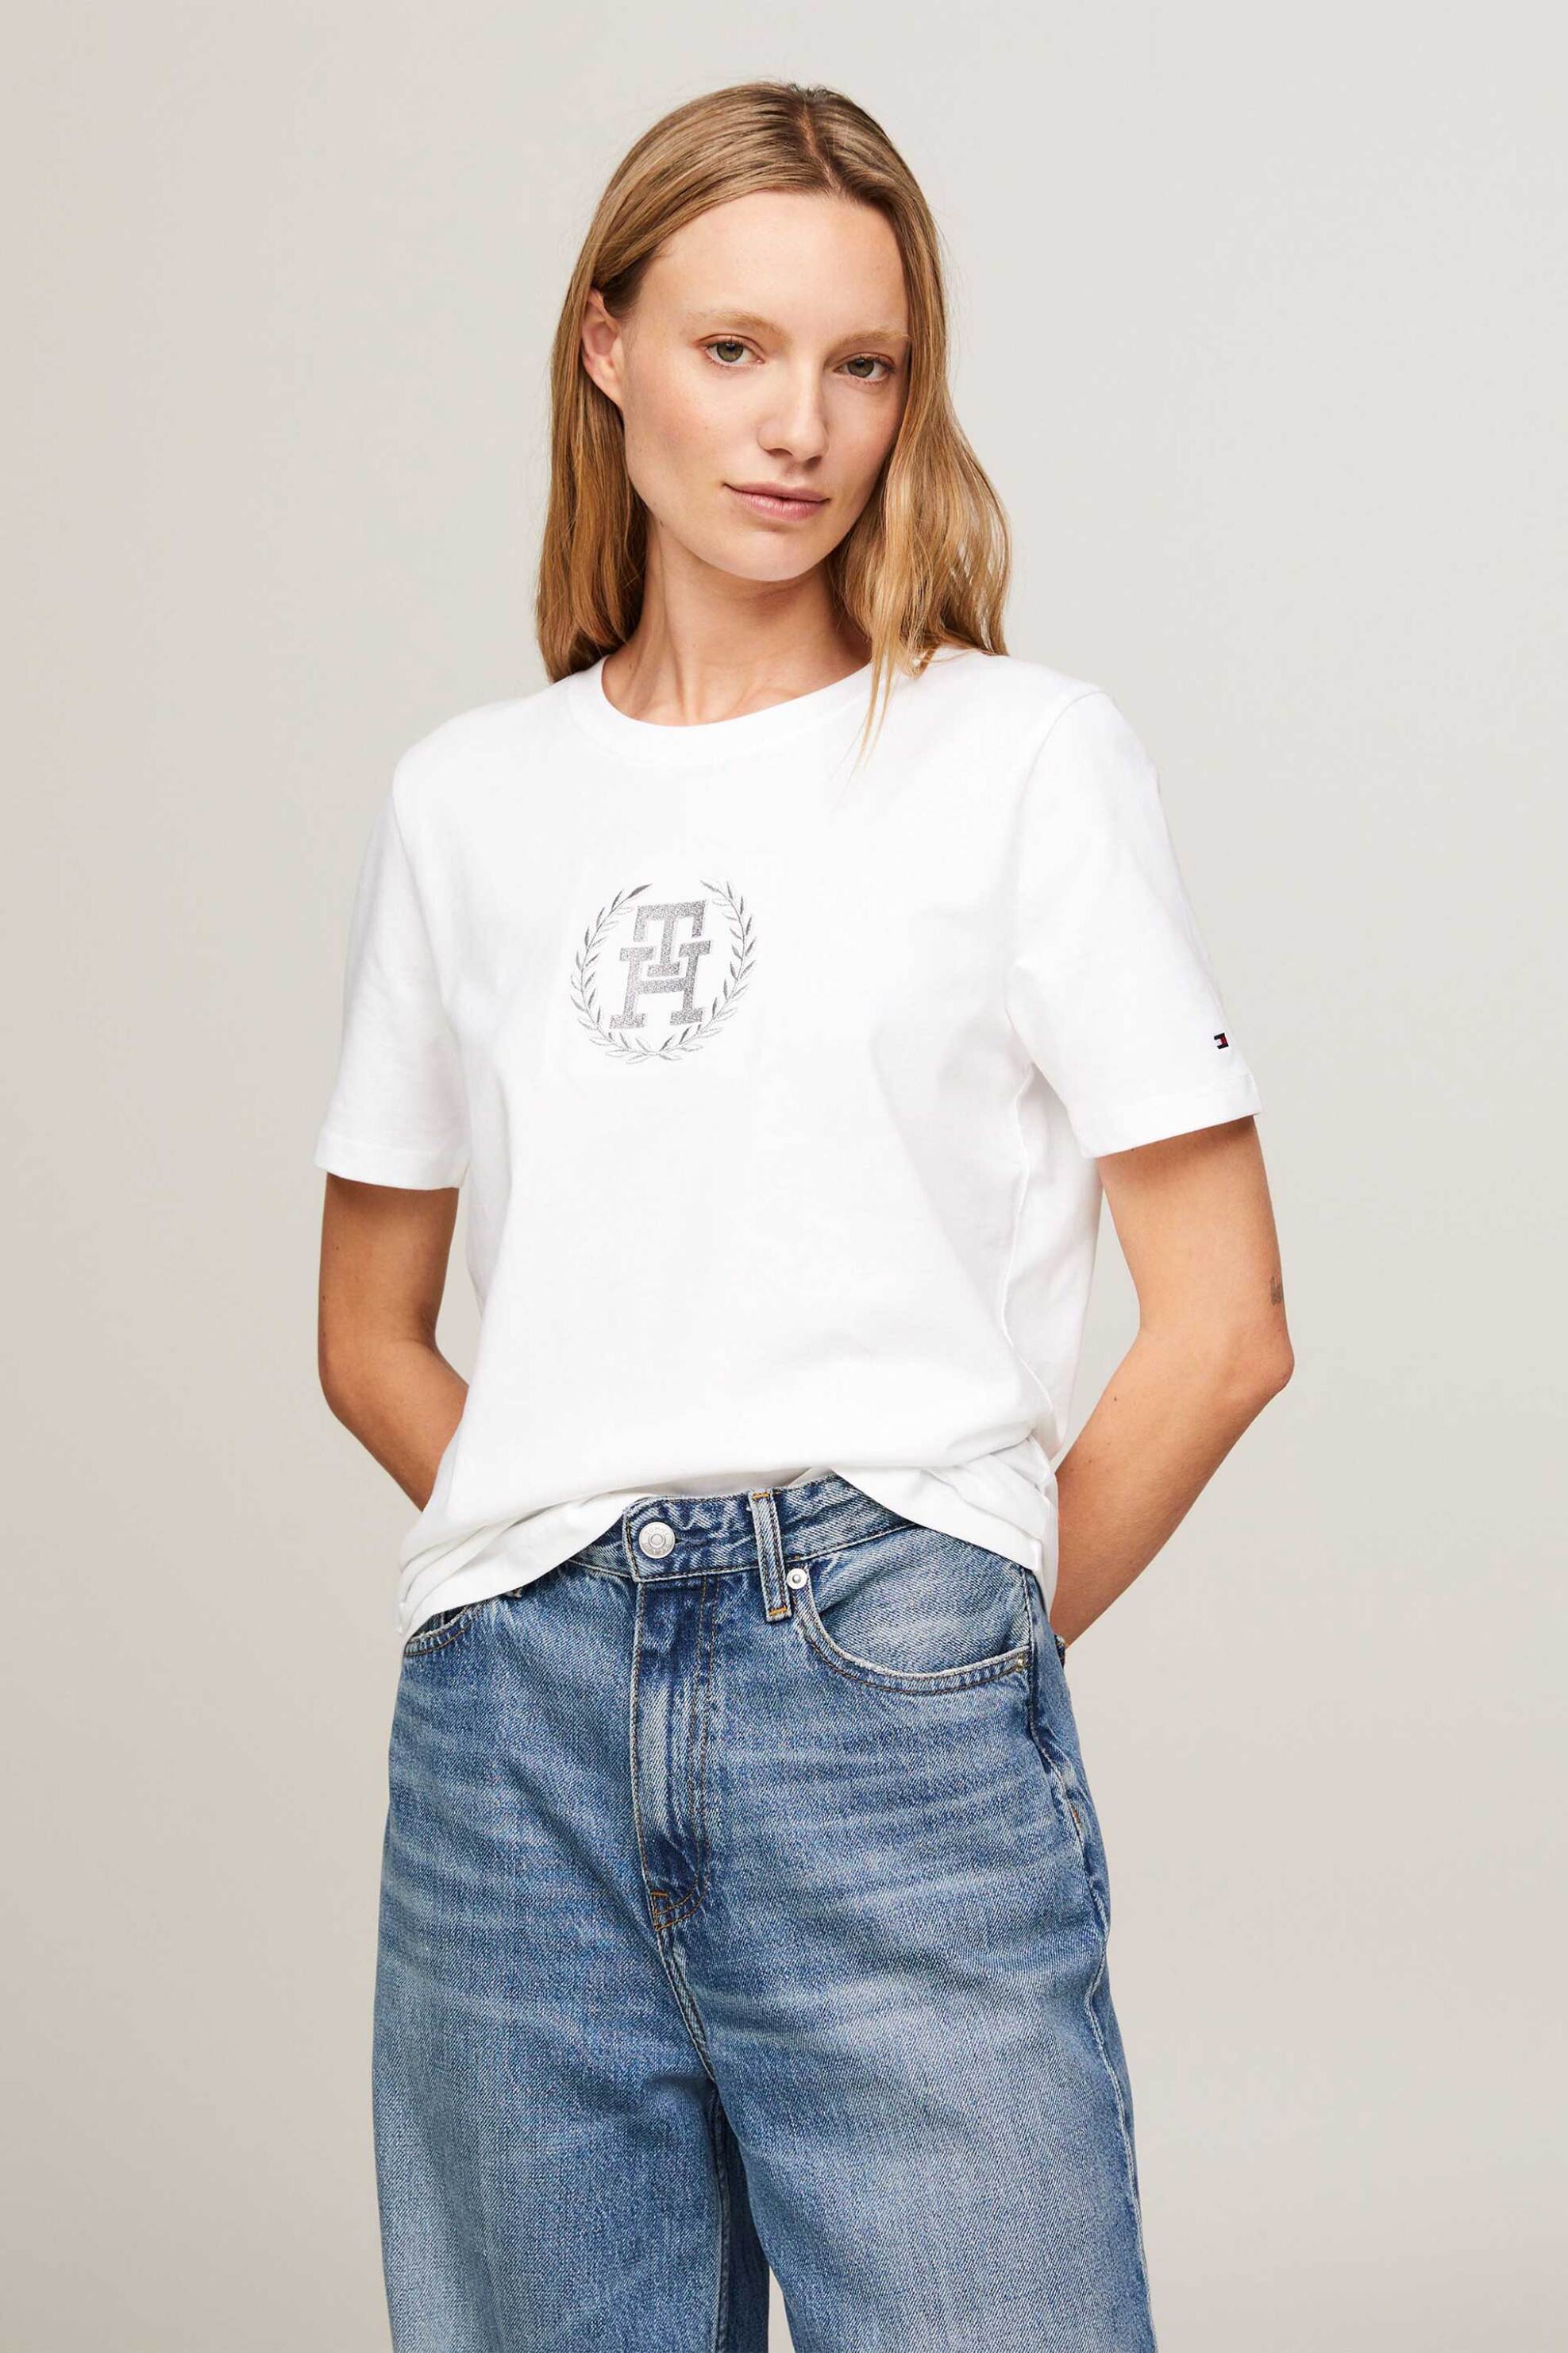 Γυναικεία Ρούχα & Αξεσουάρ > Γυναικεία Ρούχα > Γυναικεία Τοπ > Γυναικεία T-Shirts Tommy Hilfiger γυναικείο βαμβακερό T-shirt με contrast logo print - WW0WW41765 Λευκό